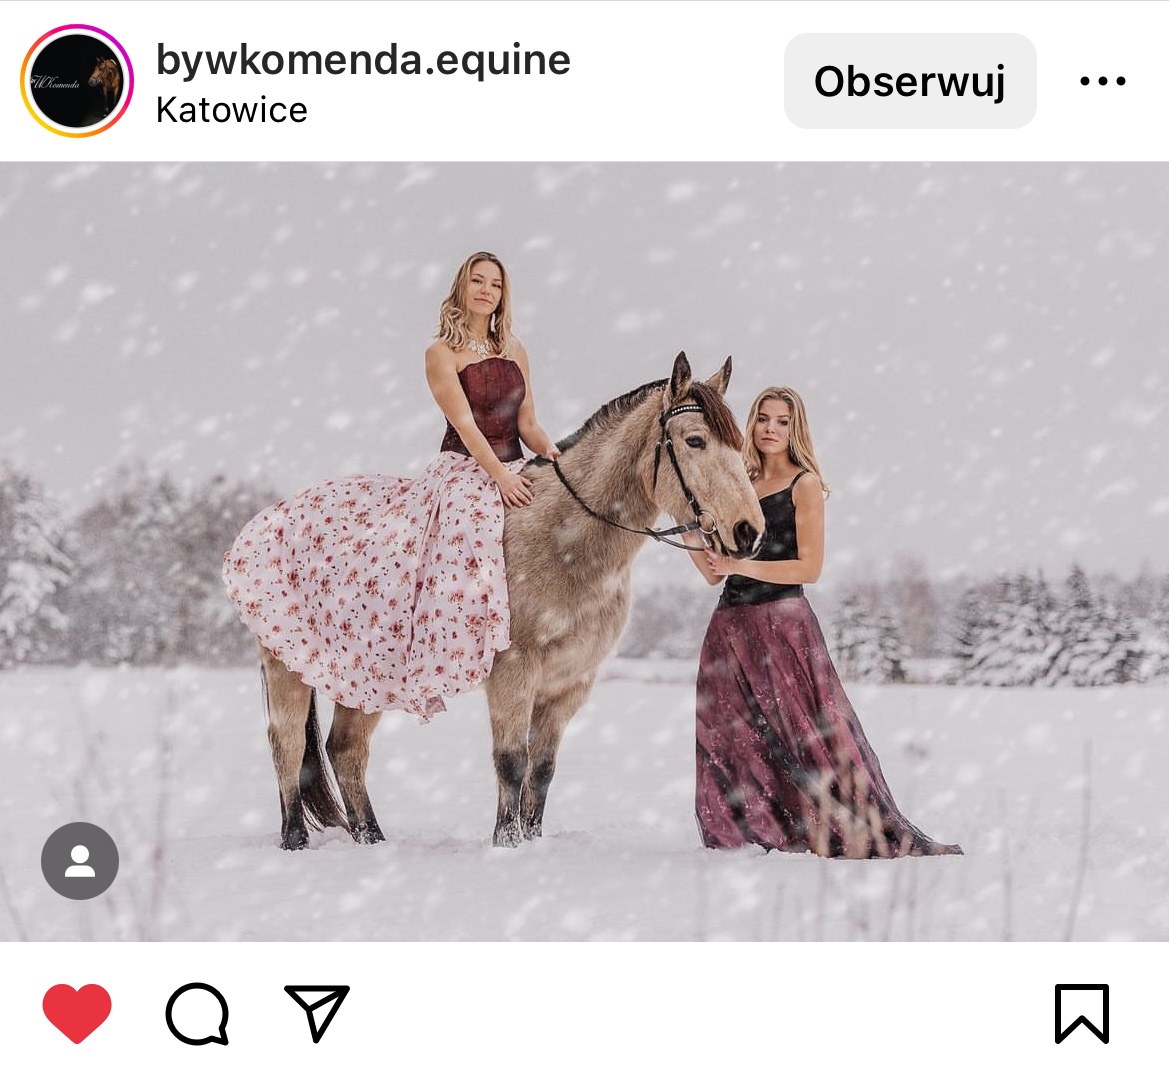 Zimowa sceneria. Kobieta siedząca na koniu w pięknej sukni, a obok druga kobieta trzymająca konia, również w pięknej, balowej sukni. #śląsktakipiękny